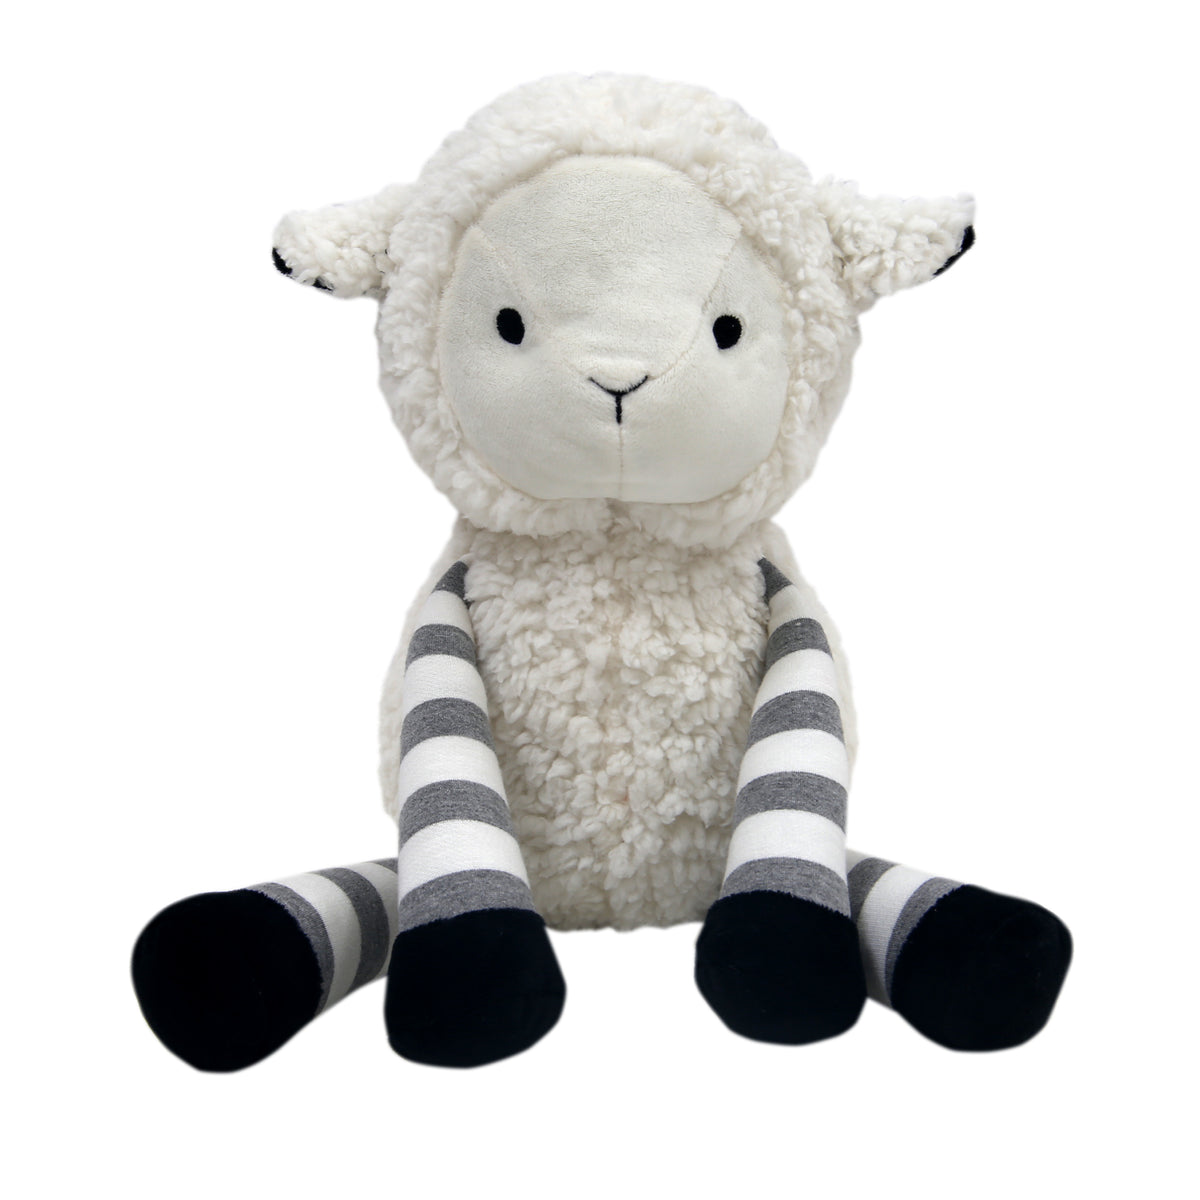 Little Sheep White/Gray Plush Lamb Stuffed Animal Toy - Ivy